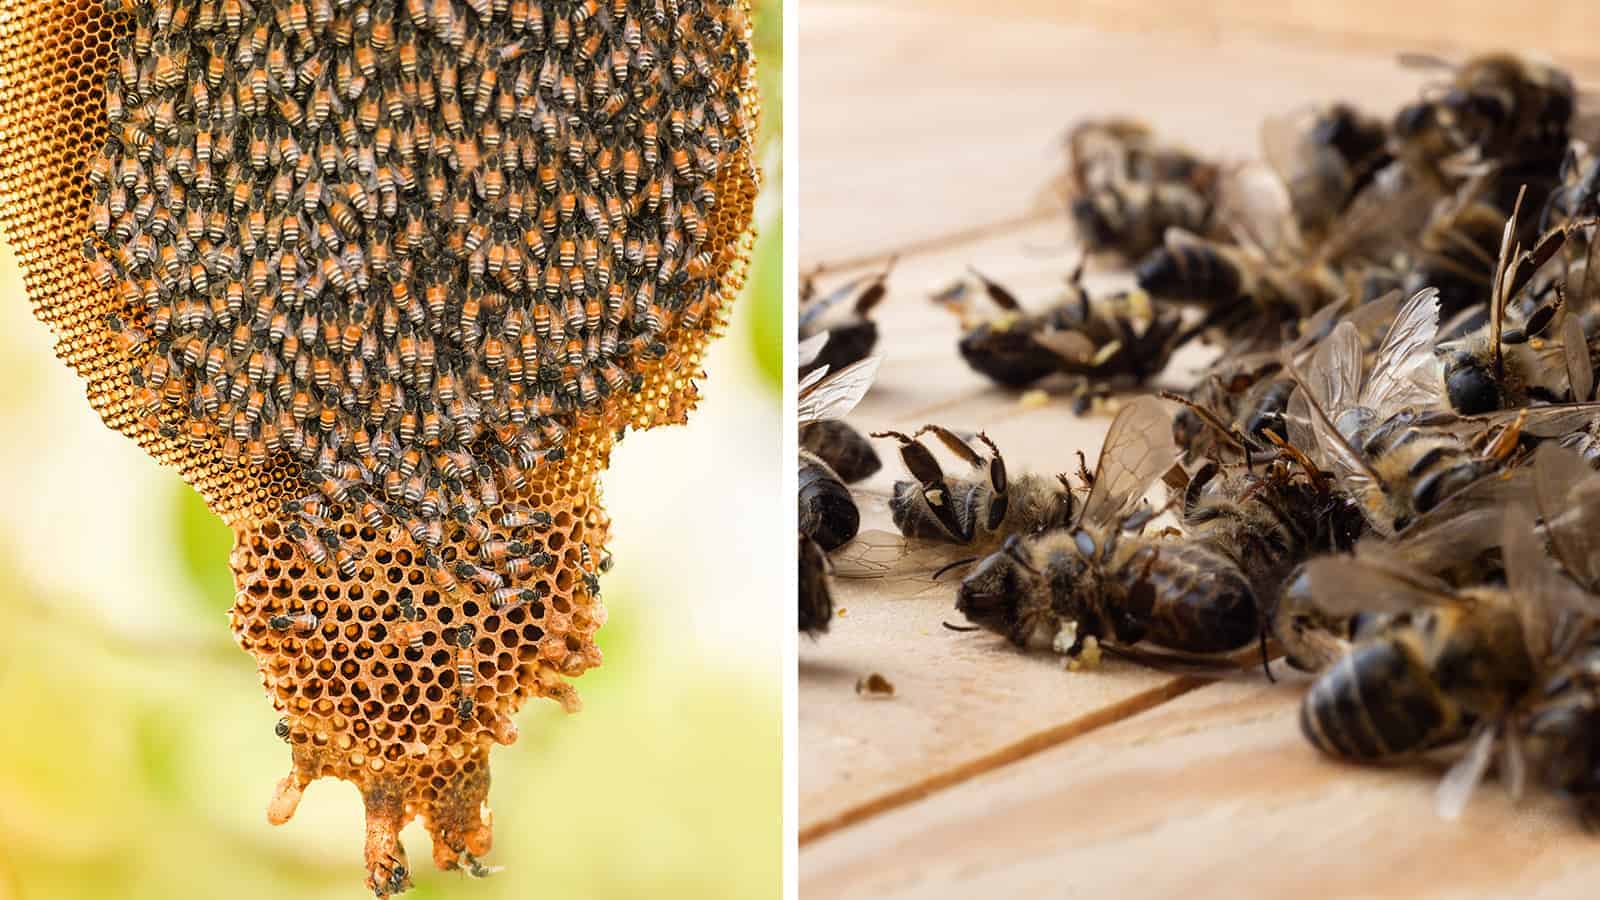 UC Davis Researchers Find New Threat to World’s Wild Bee Population